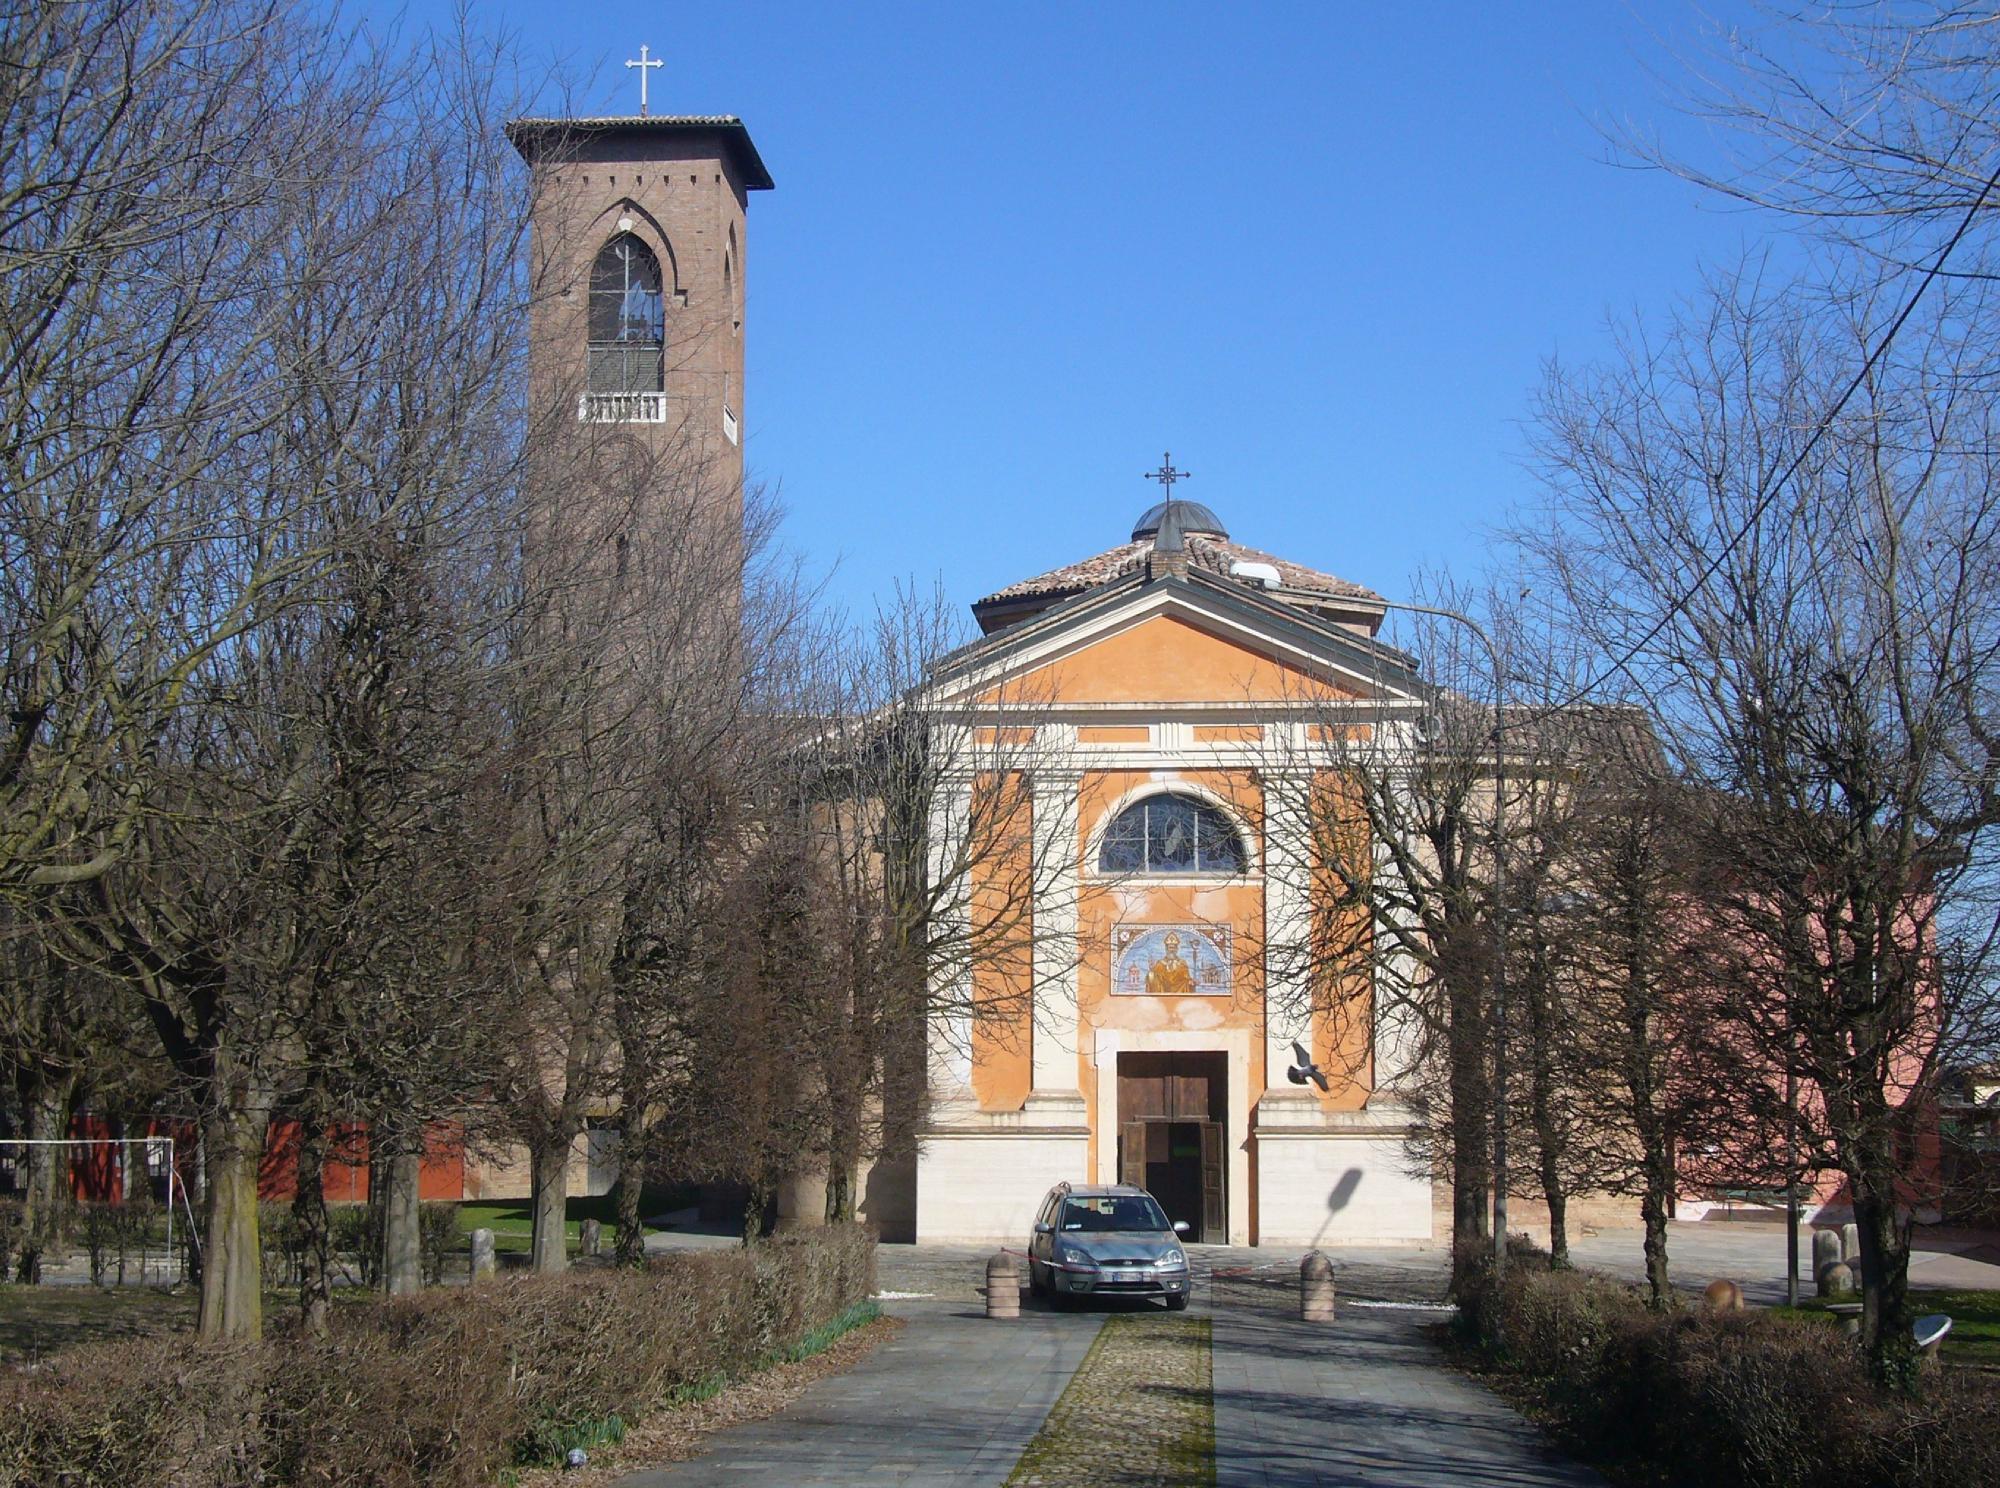 Santuario di San Geminiano